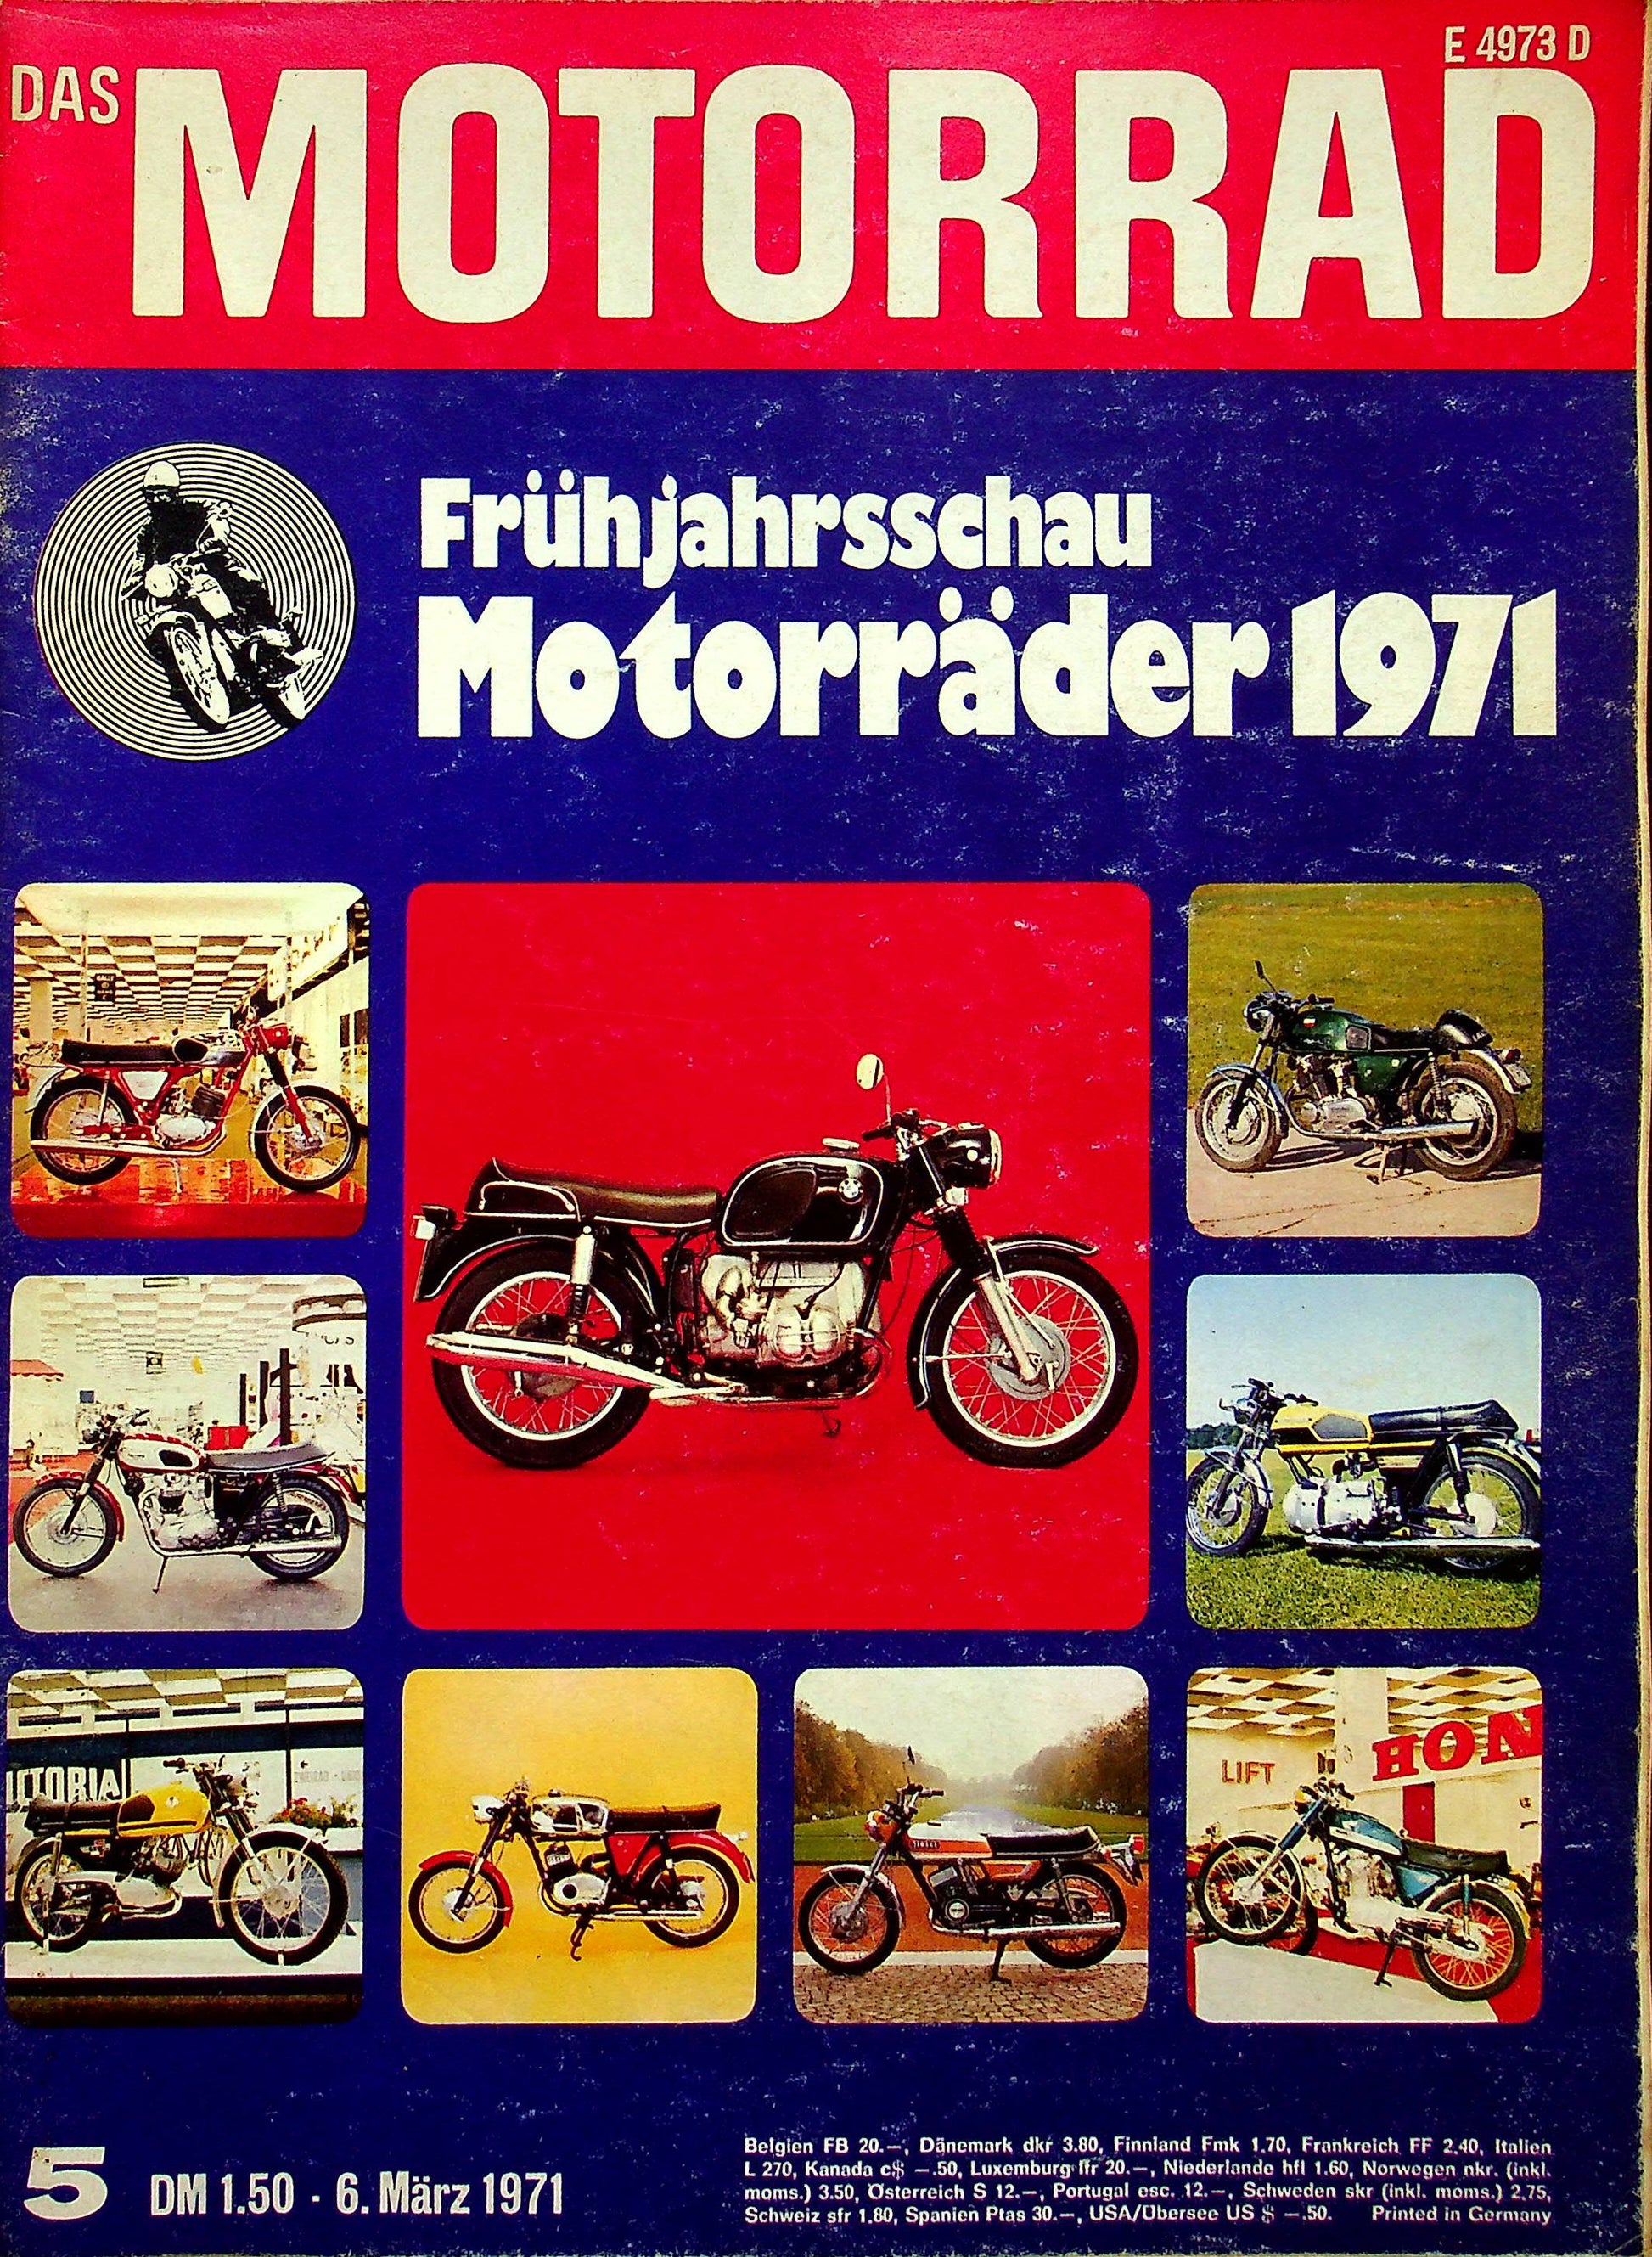 Motorrad 05/1971